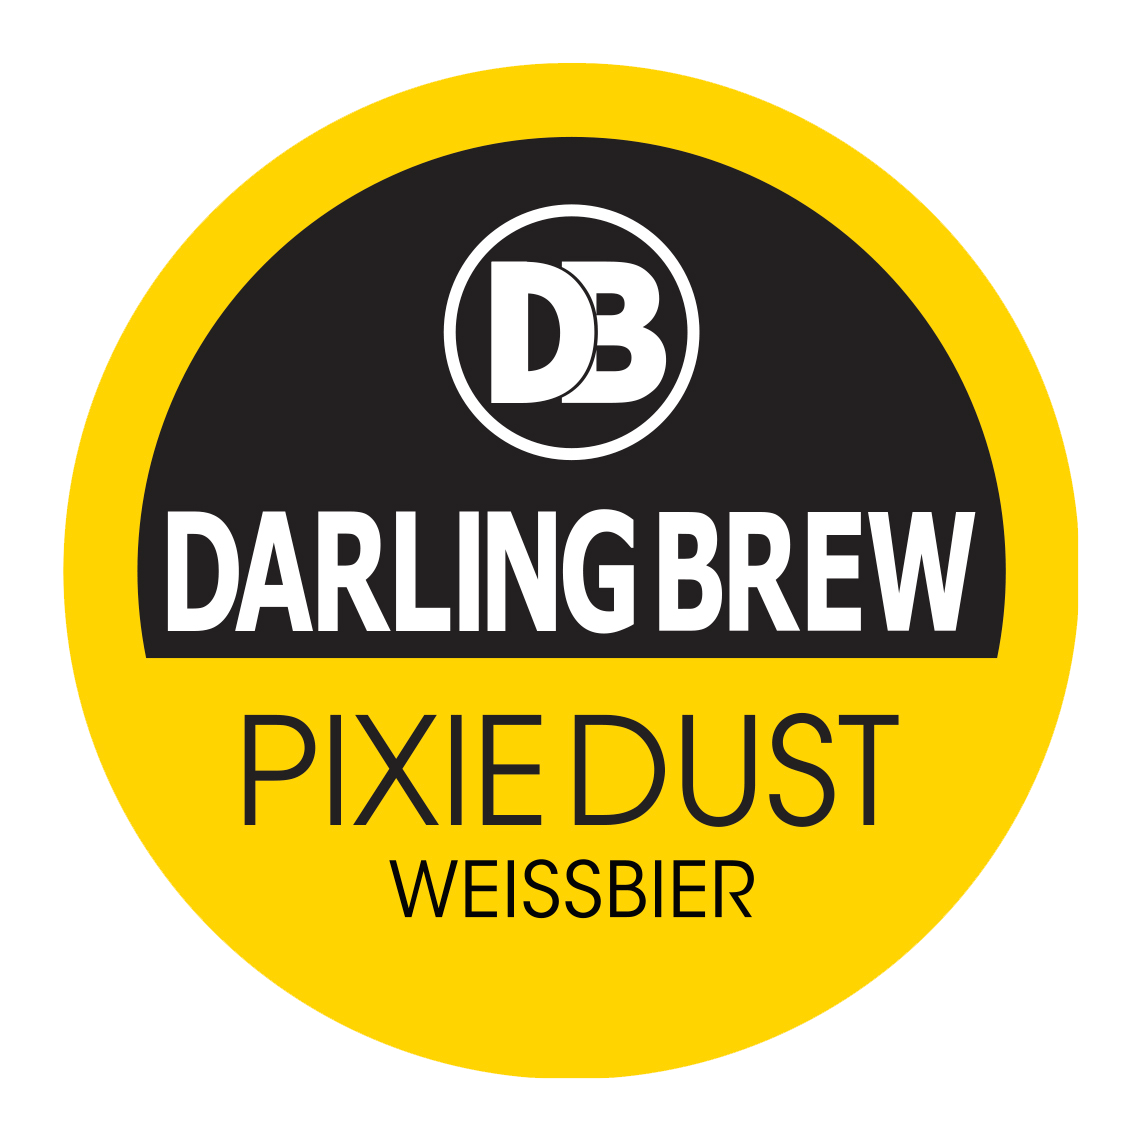 Darling Brew Pixie Dust - 20L